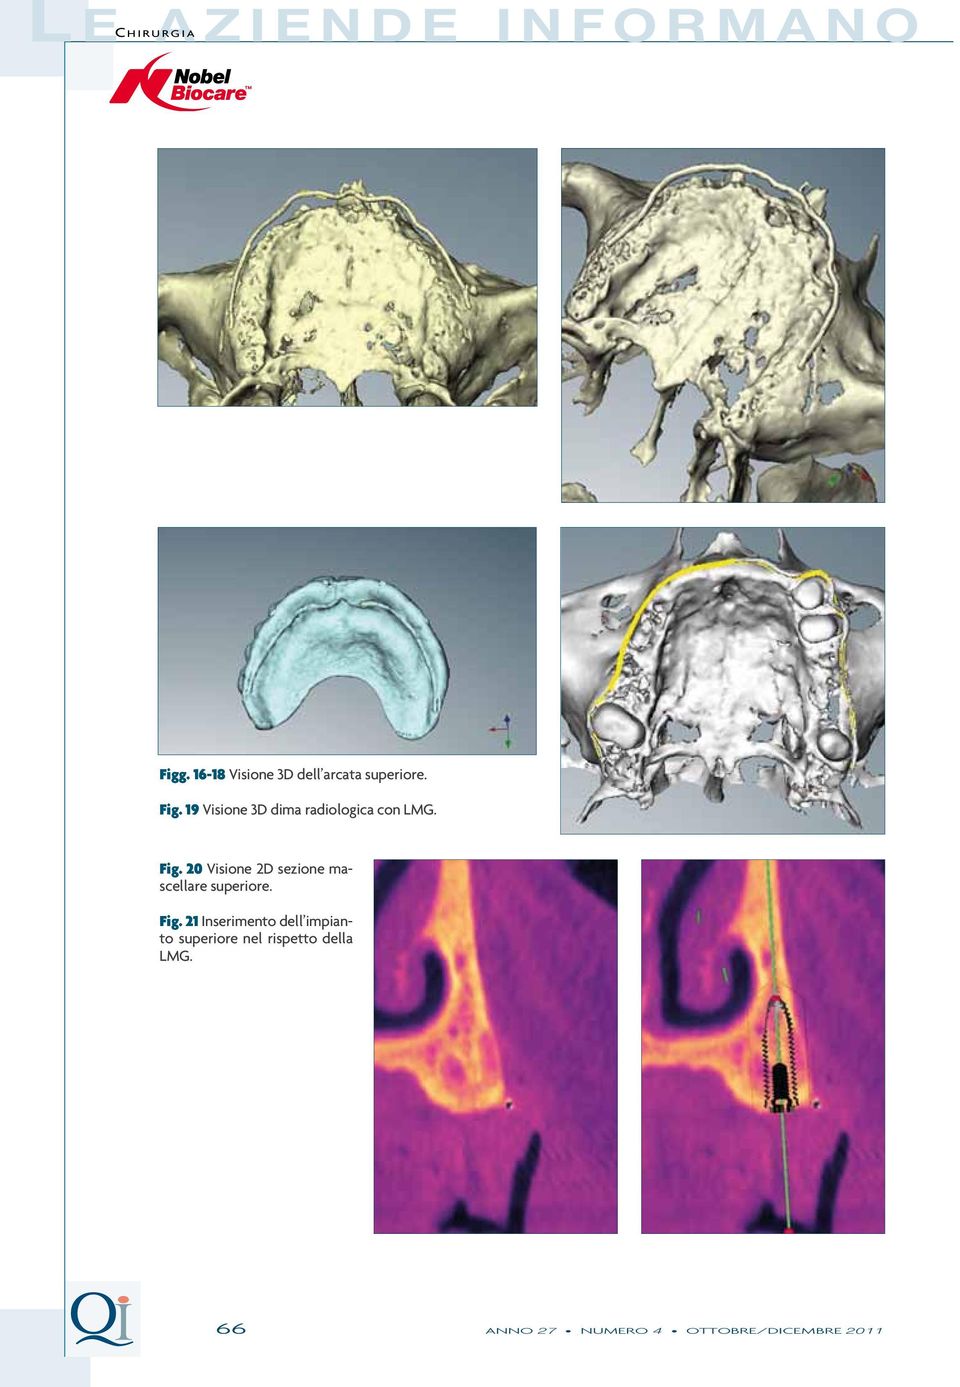 19 Visione 3D dima radiologica con LMG. Fig.